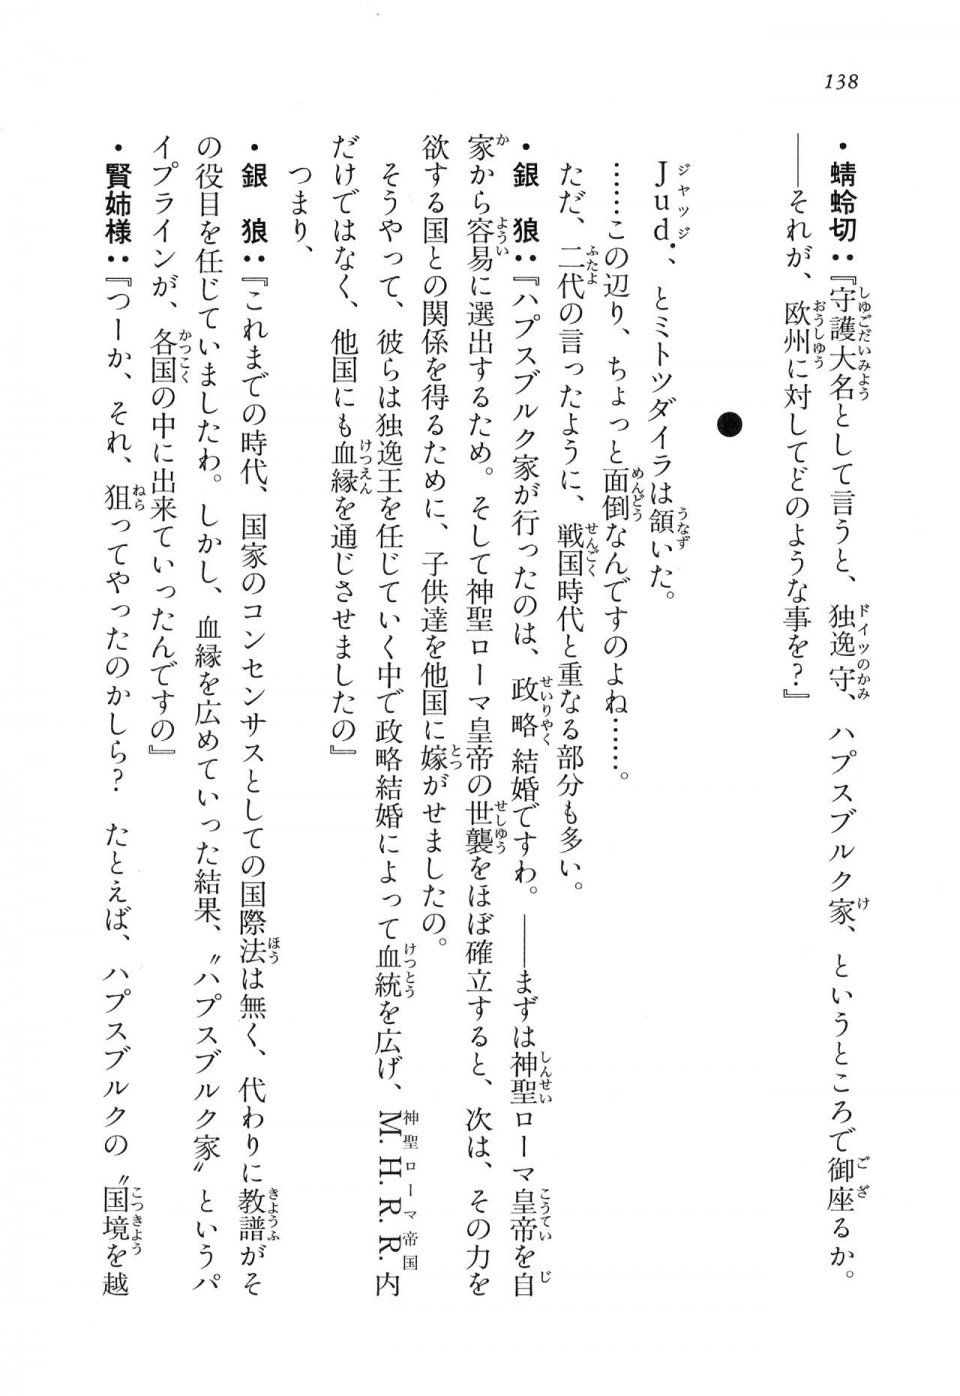 Kyoukai Senjou no Horizon LN Vol 16(7A) - Photo #138